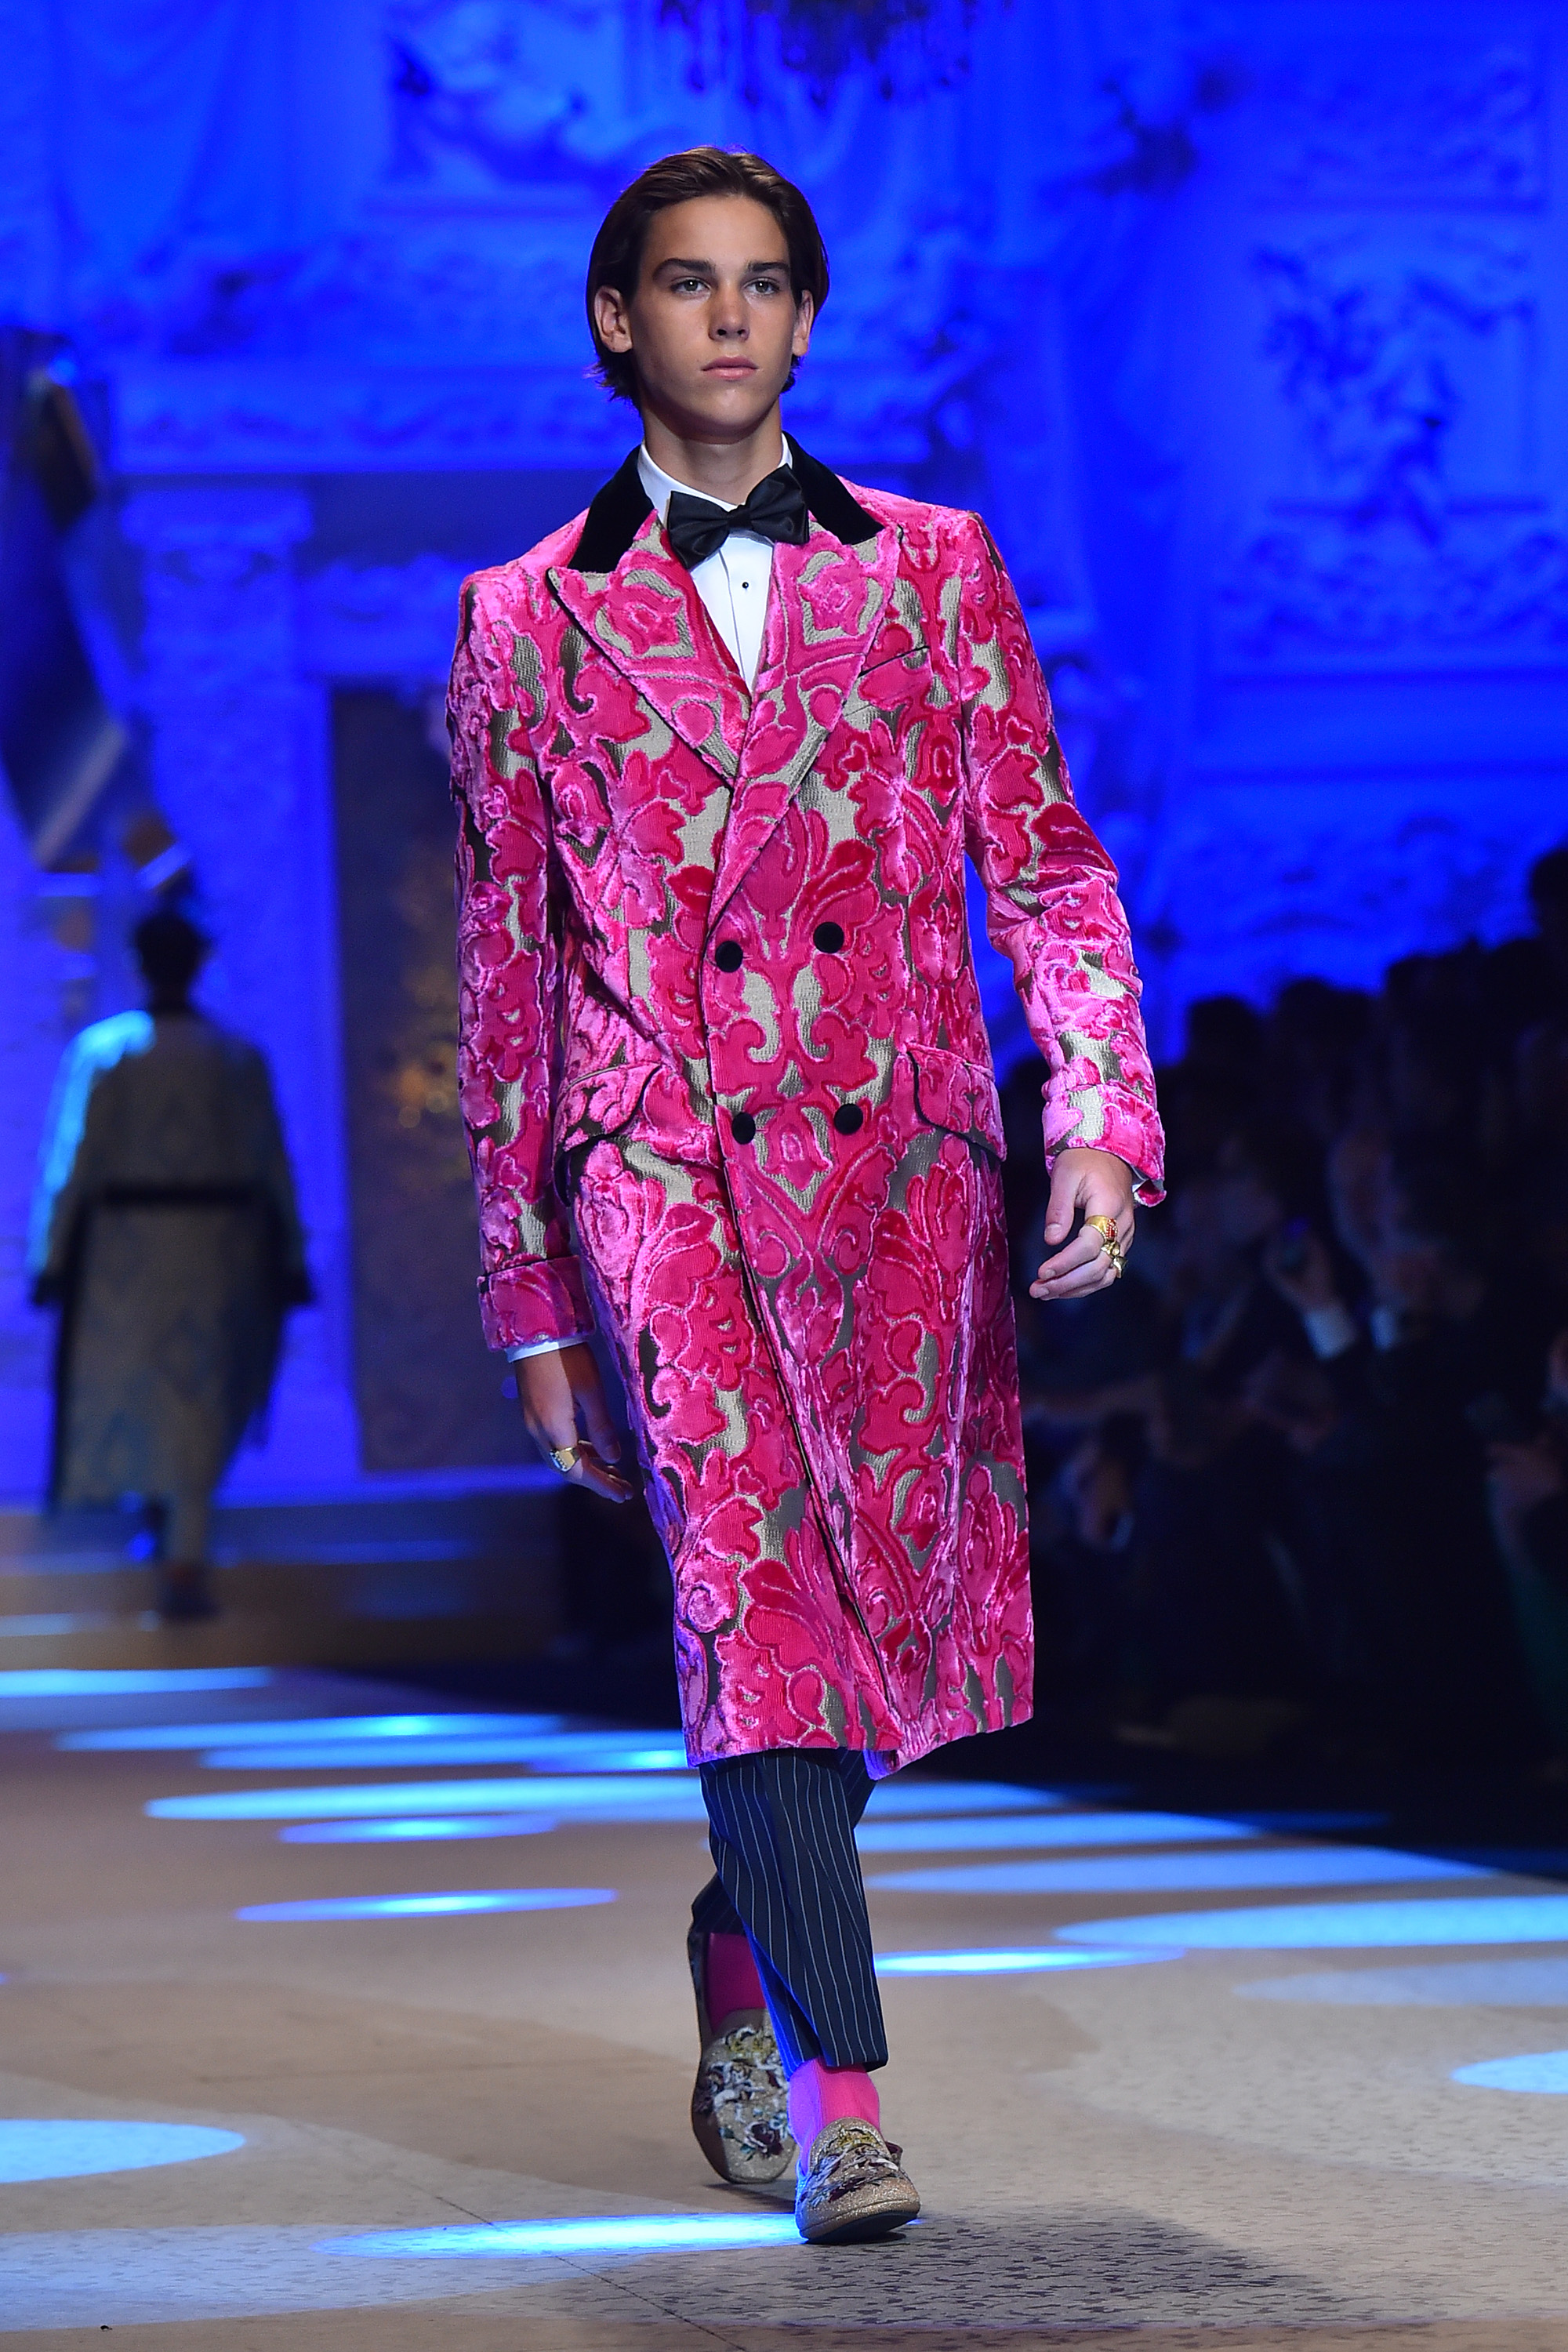 Paris Brosnan marche sur le podium lors du défilé Dolce &amp; Gabbana pendant la semaine de la mode masculine de Milan automne/hiver 2018/19 le 13 janvier 2018 à Milan, Italie | Source : Getty Images